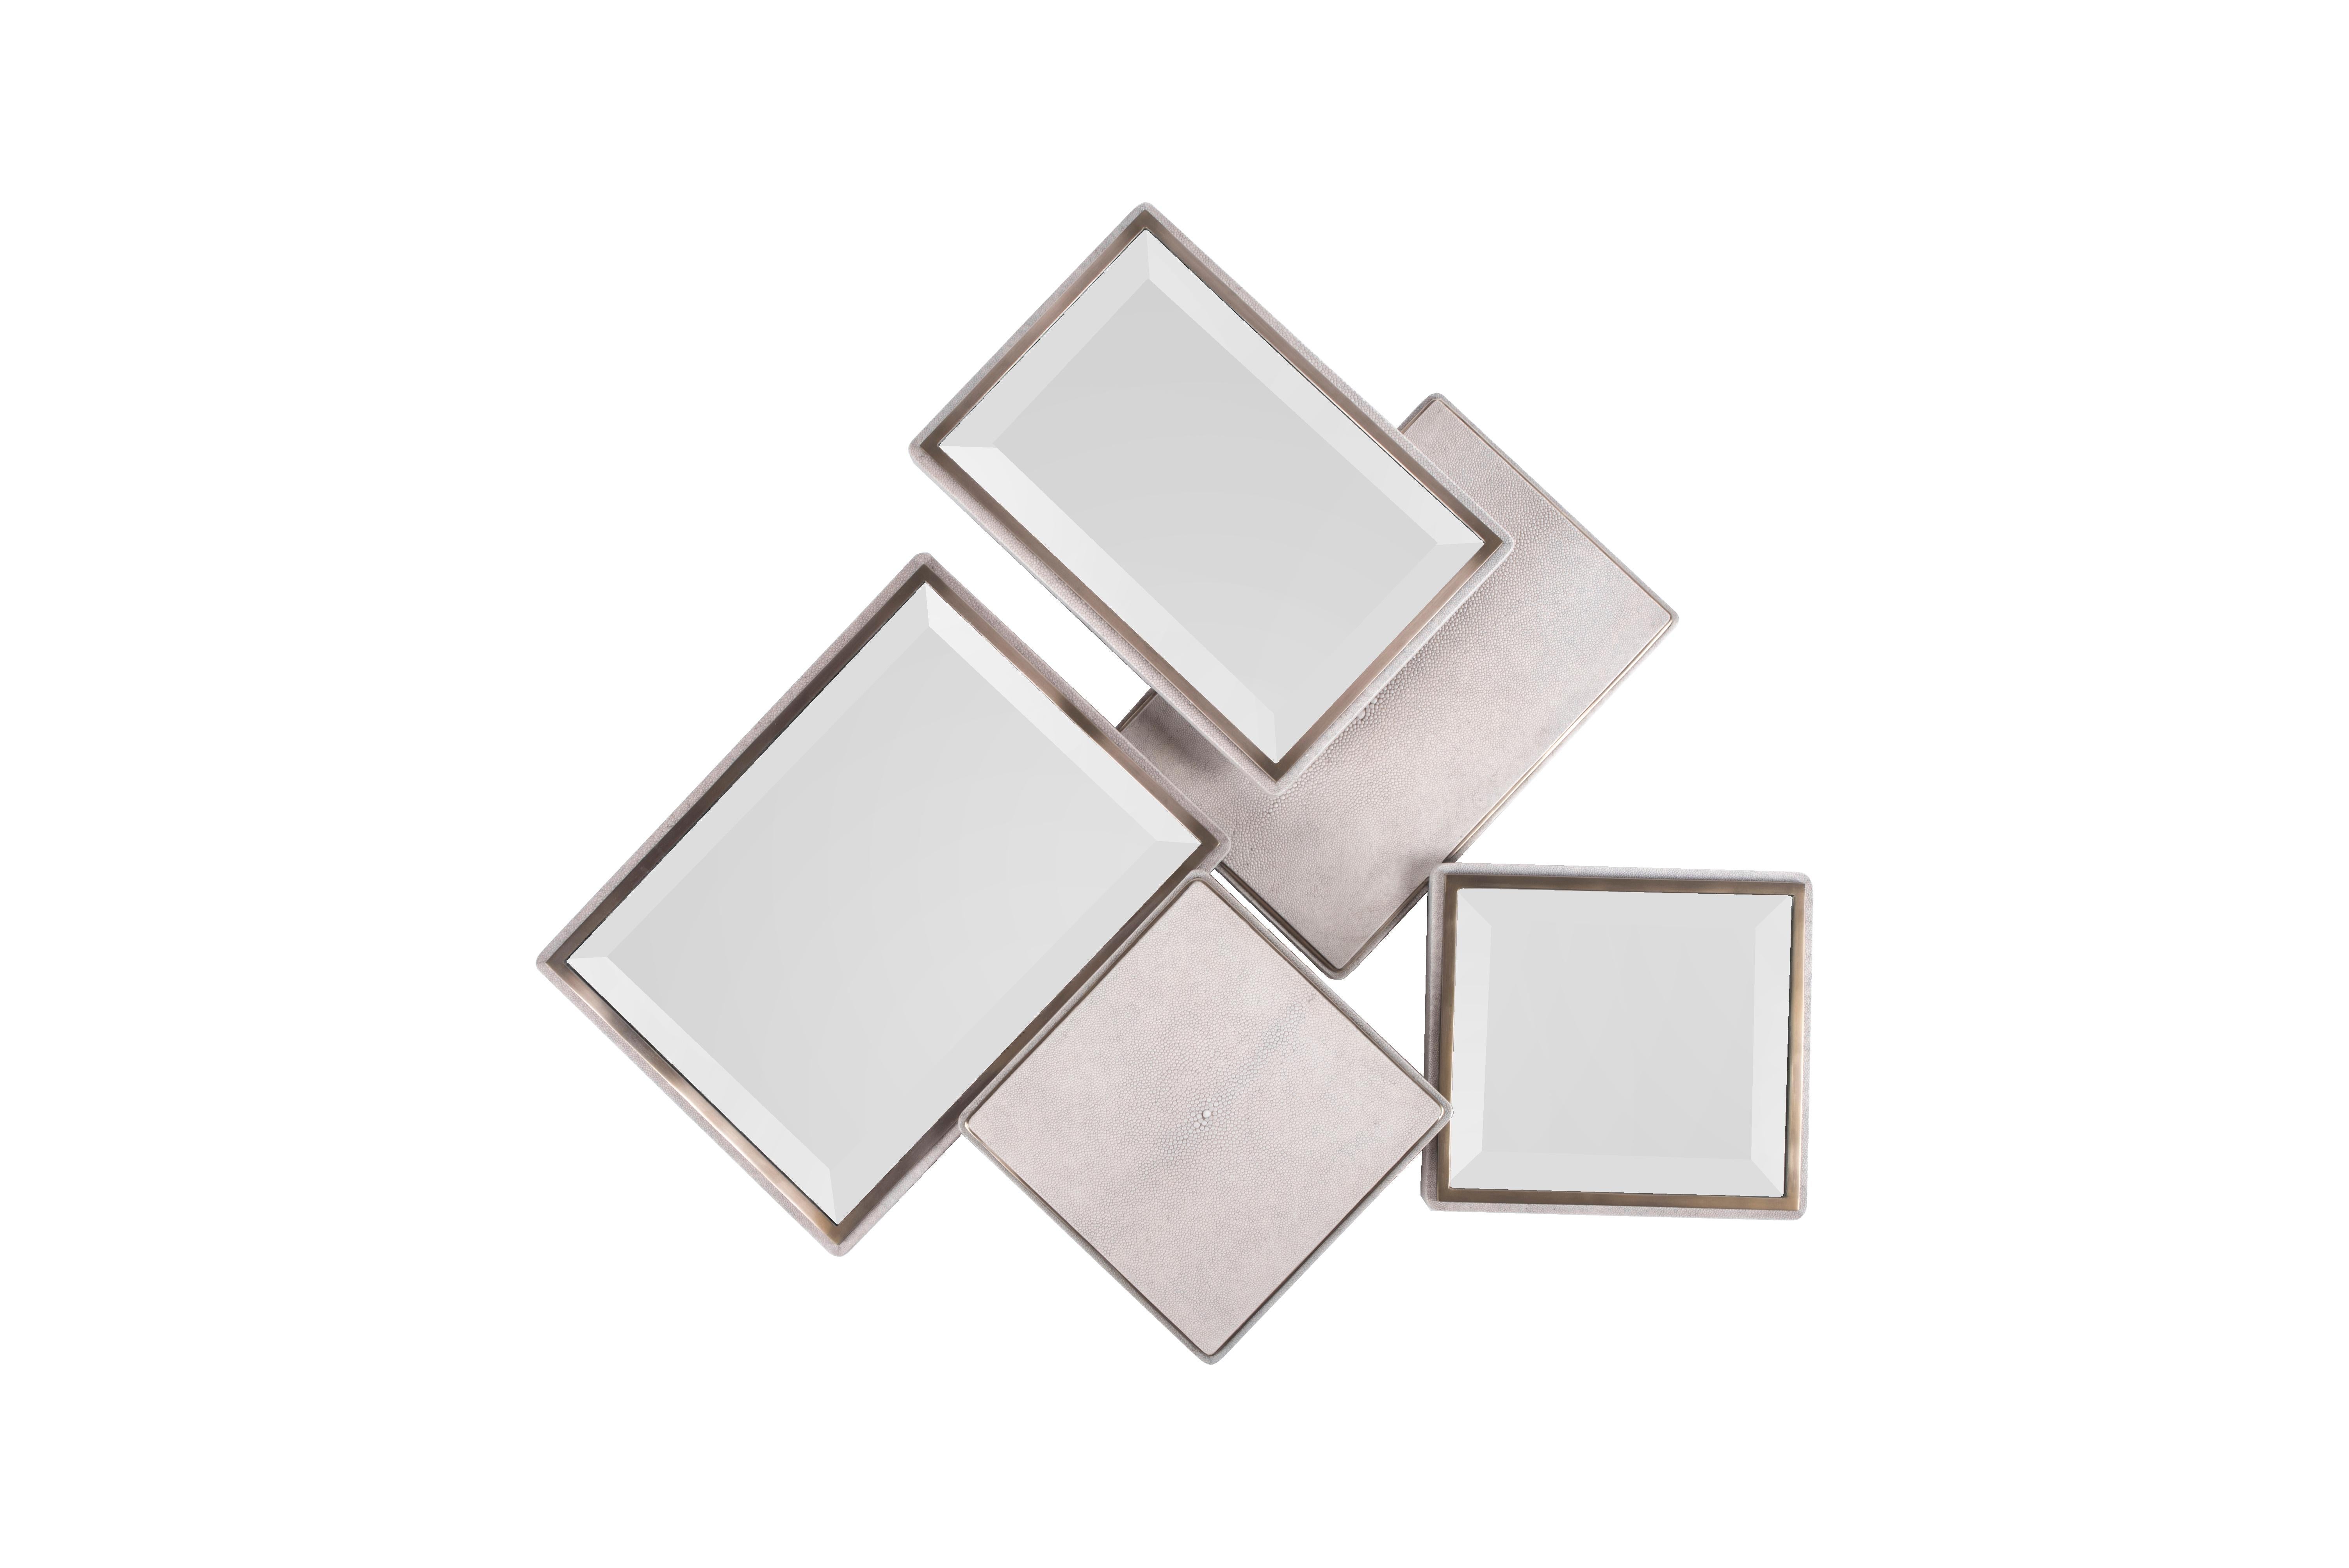 Der Mondrian Mirror Large ist ein verspieltes, grafisches Stück mit einer geometrischen Mischung aus Spiegelteilen und cremefarbenen Chagrinteilen, die auf verschiedenen Ebenen angeordnet sind. Die Chagrin-Teile sind mit einer diskreten Einkerbung